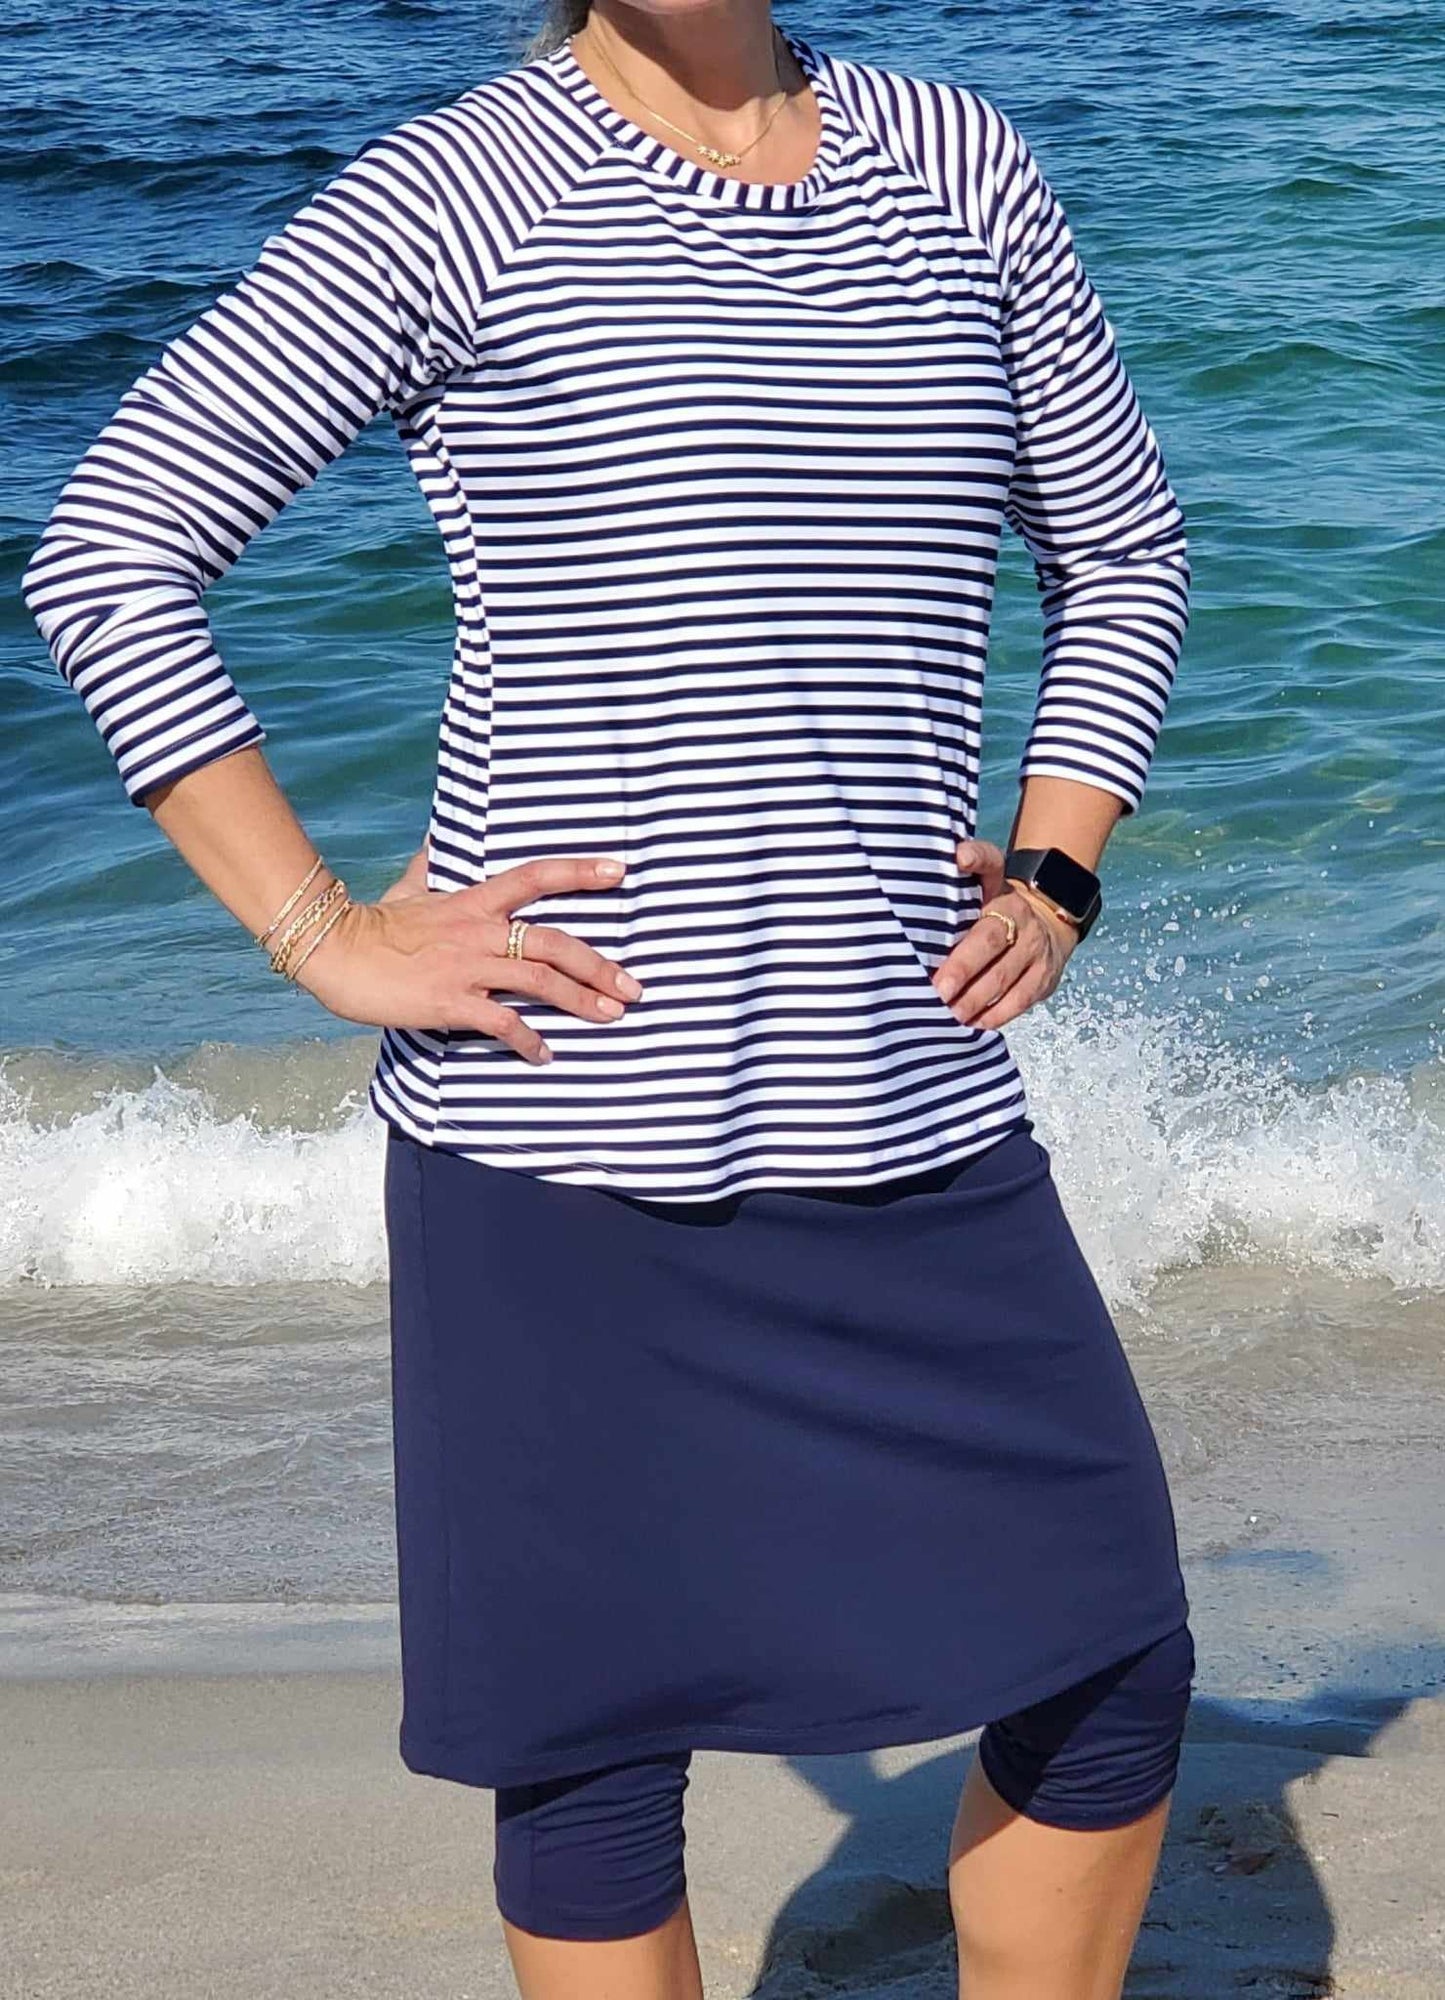 Women's modest long sleeve swim top in navy blue striped pattern.